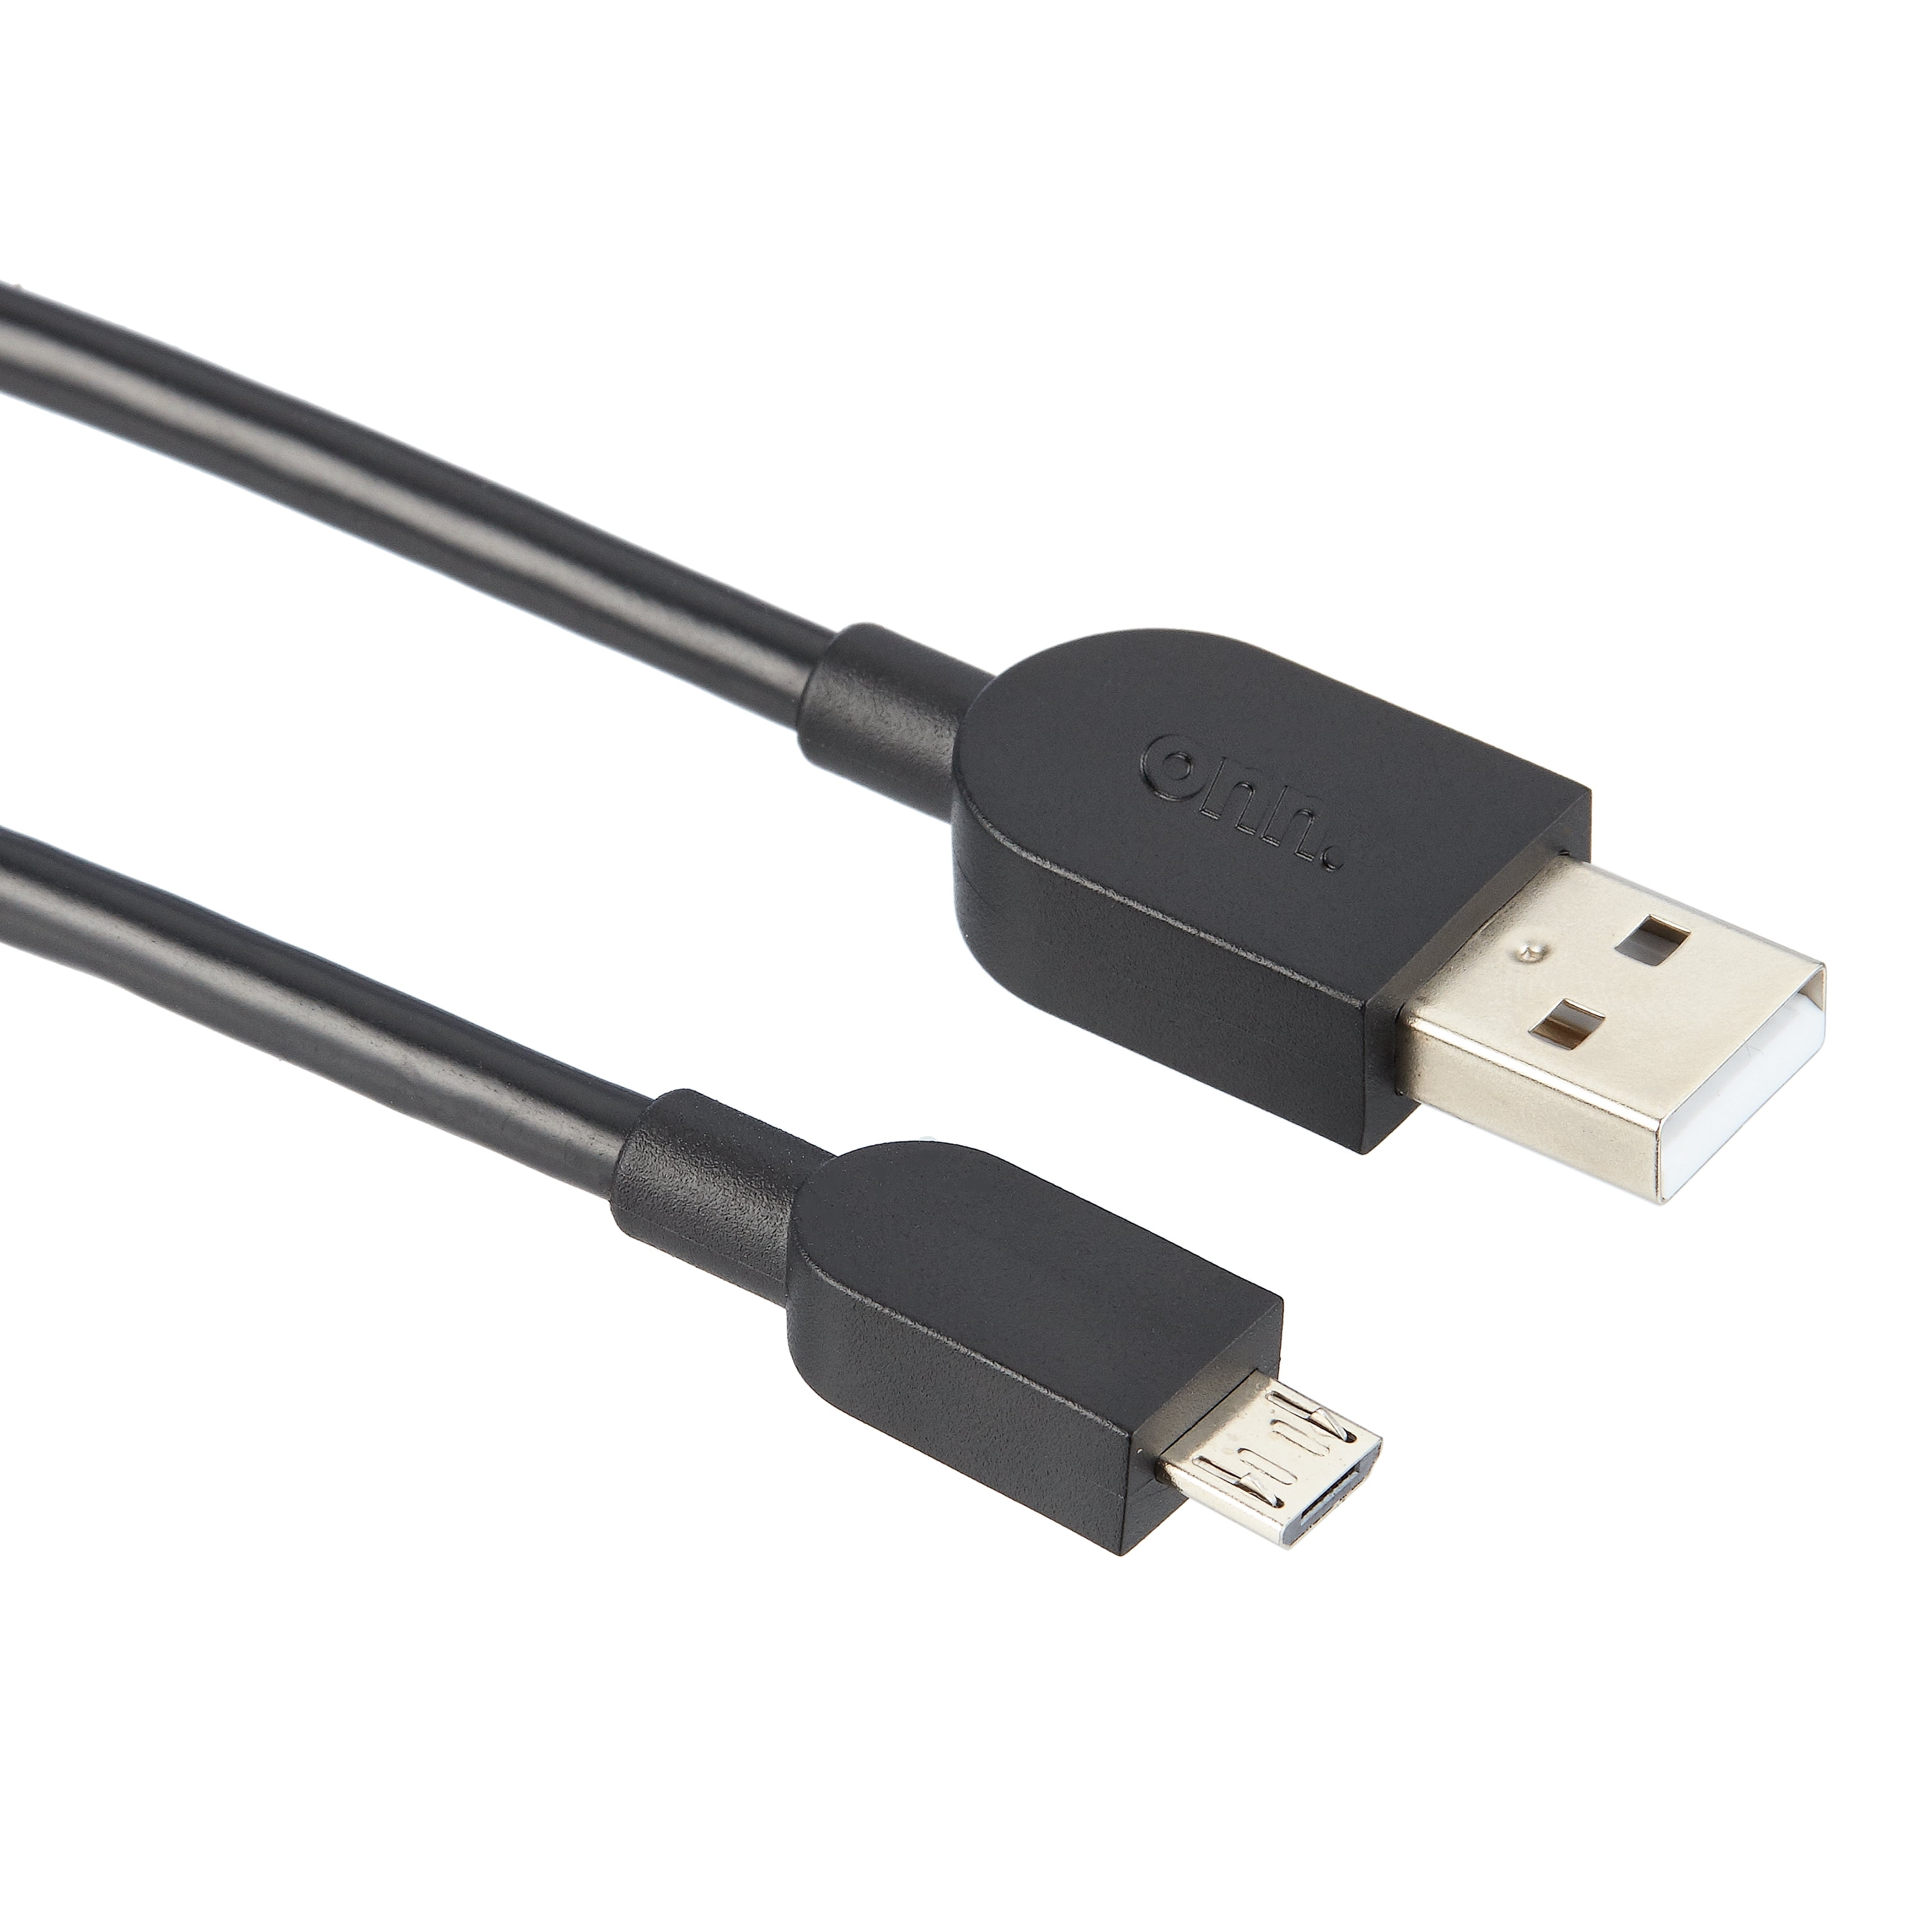 Câble de charge pour manette PS4 5V1A Noir - USG - 78301113148 